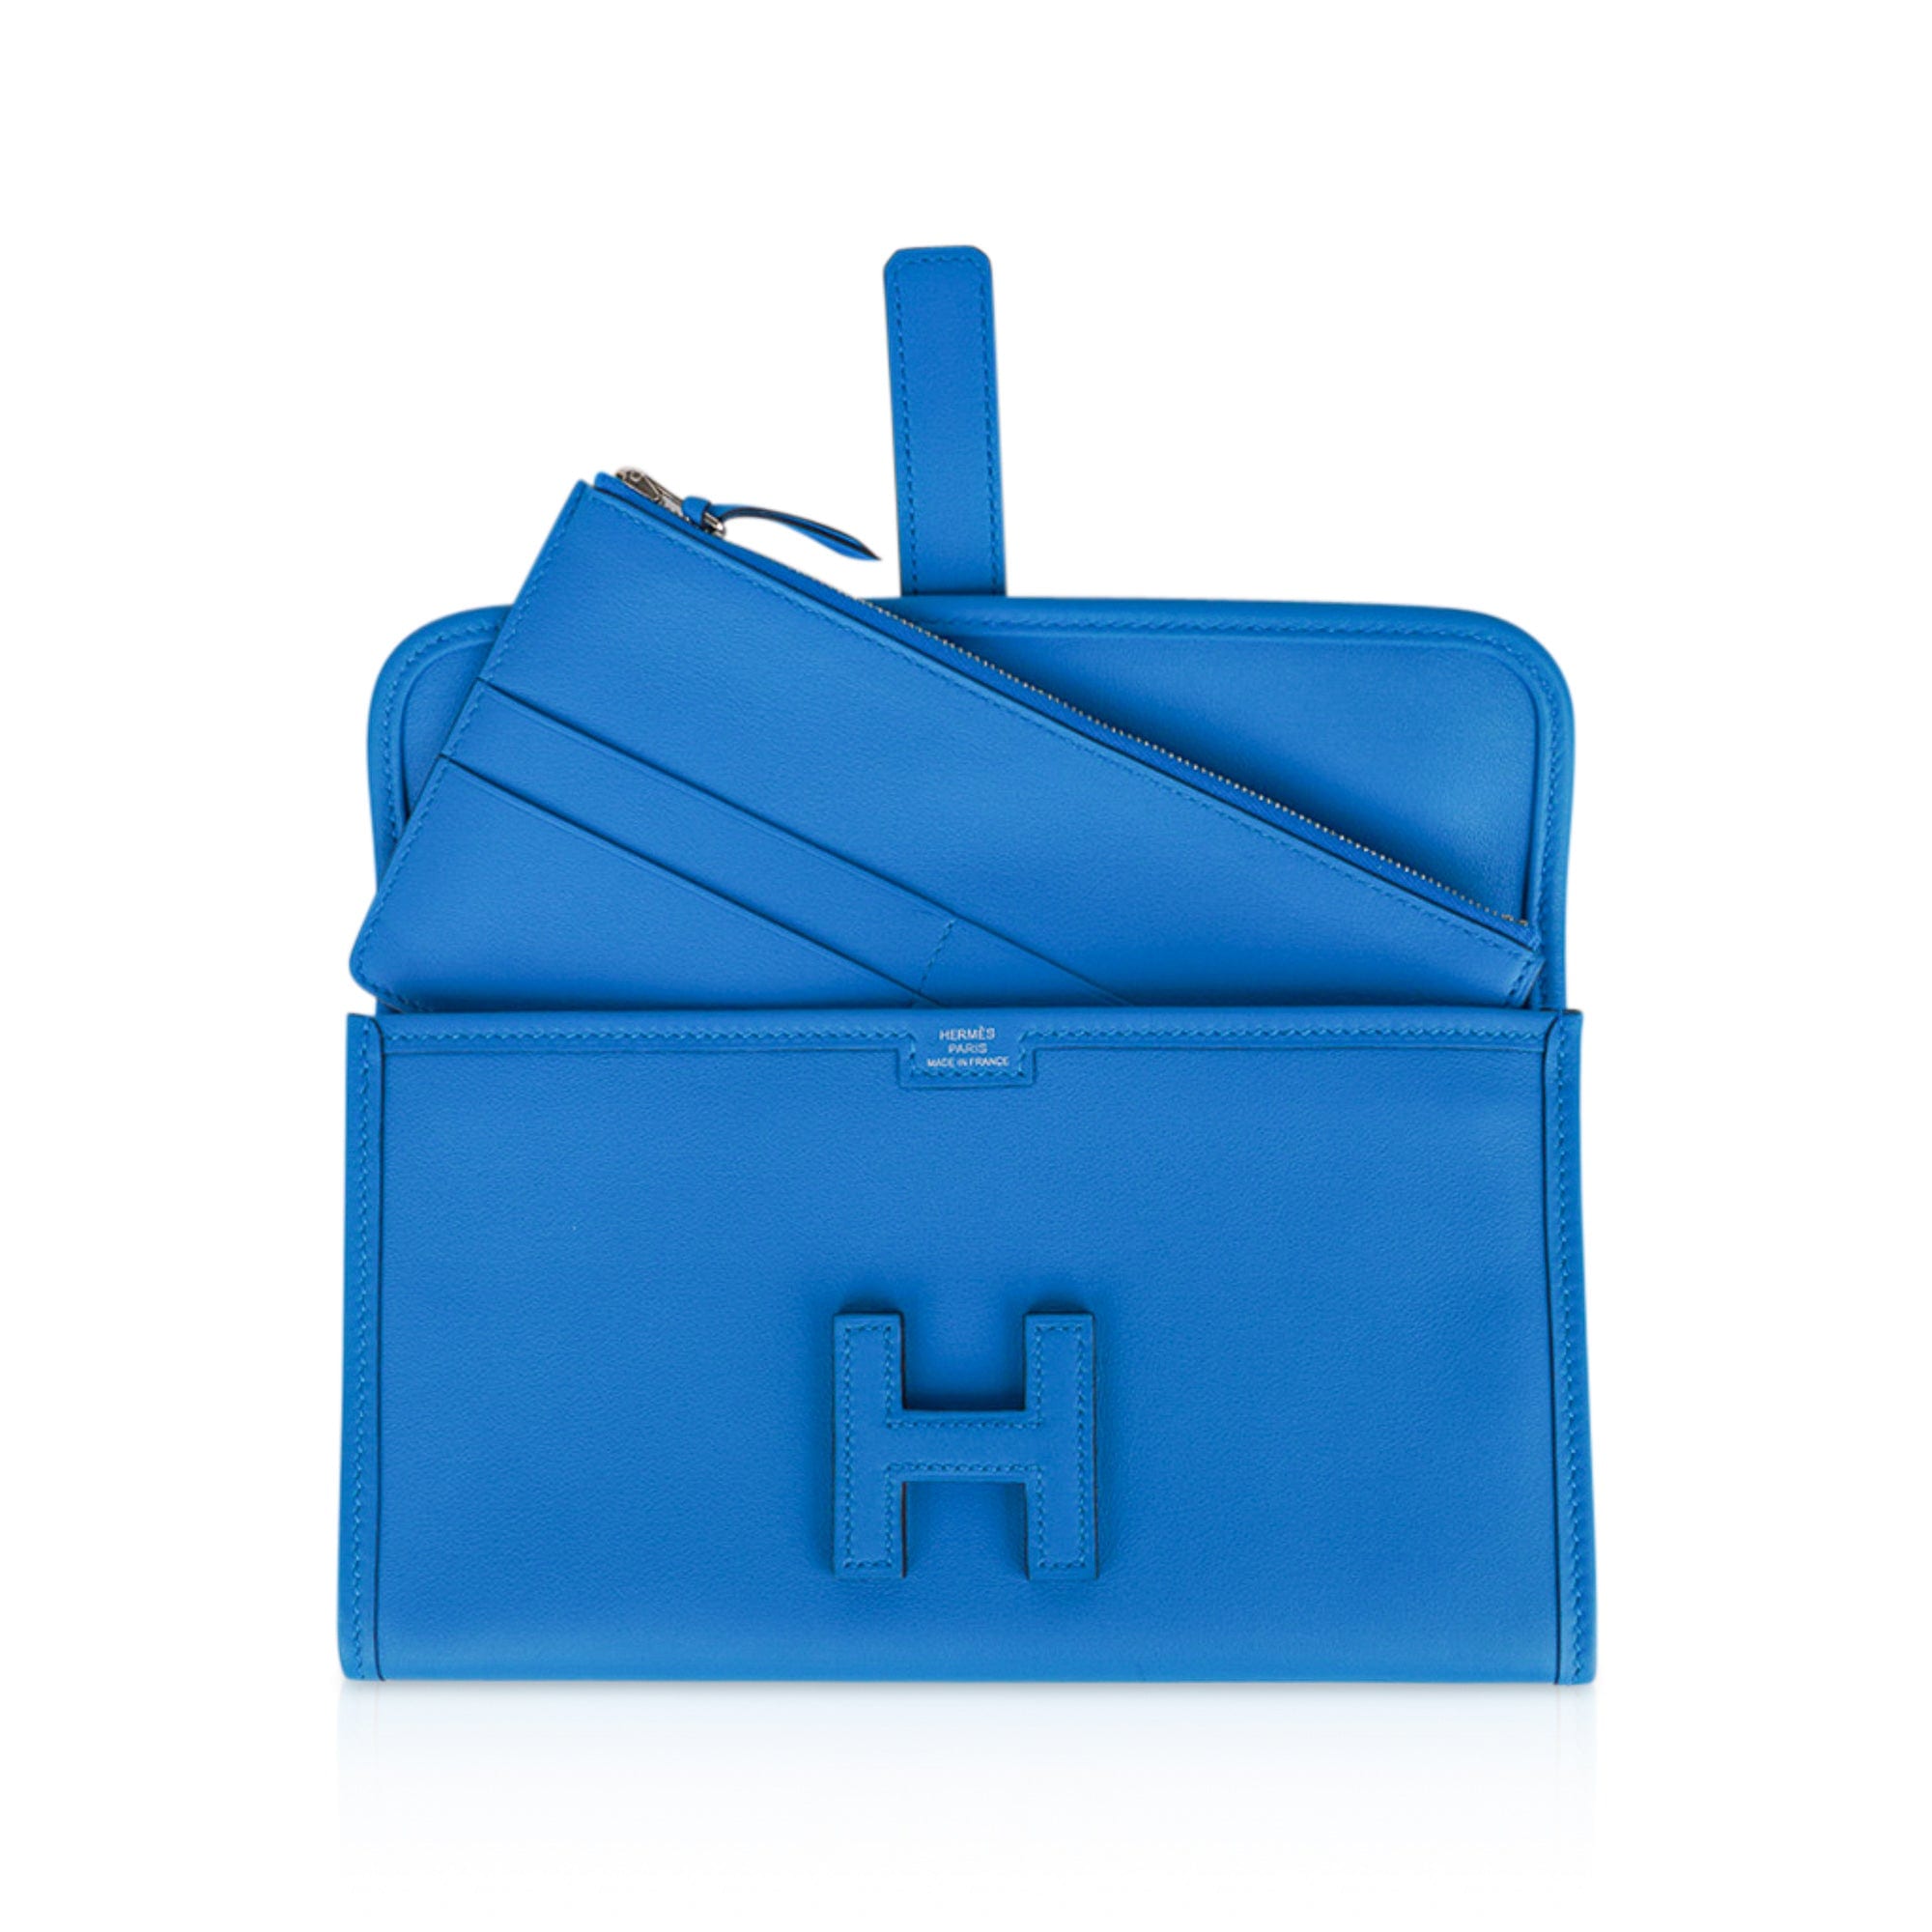 Hermes Jige Duo Wallet / Clutch Blue Zanzibar New w/Box – Mightychic